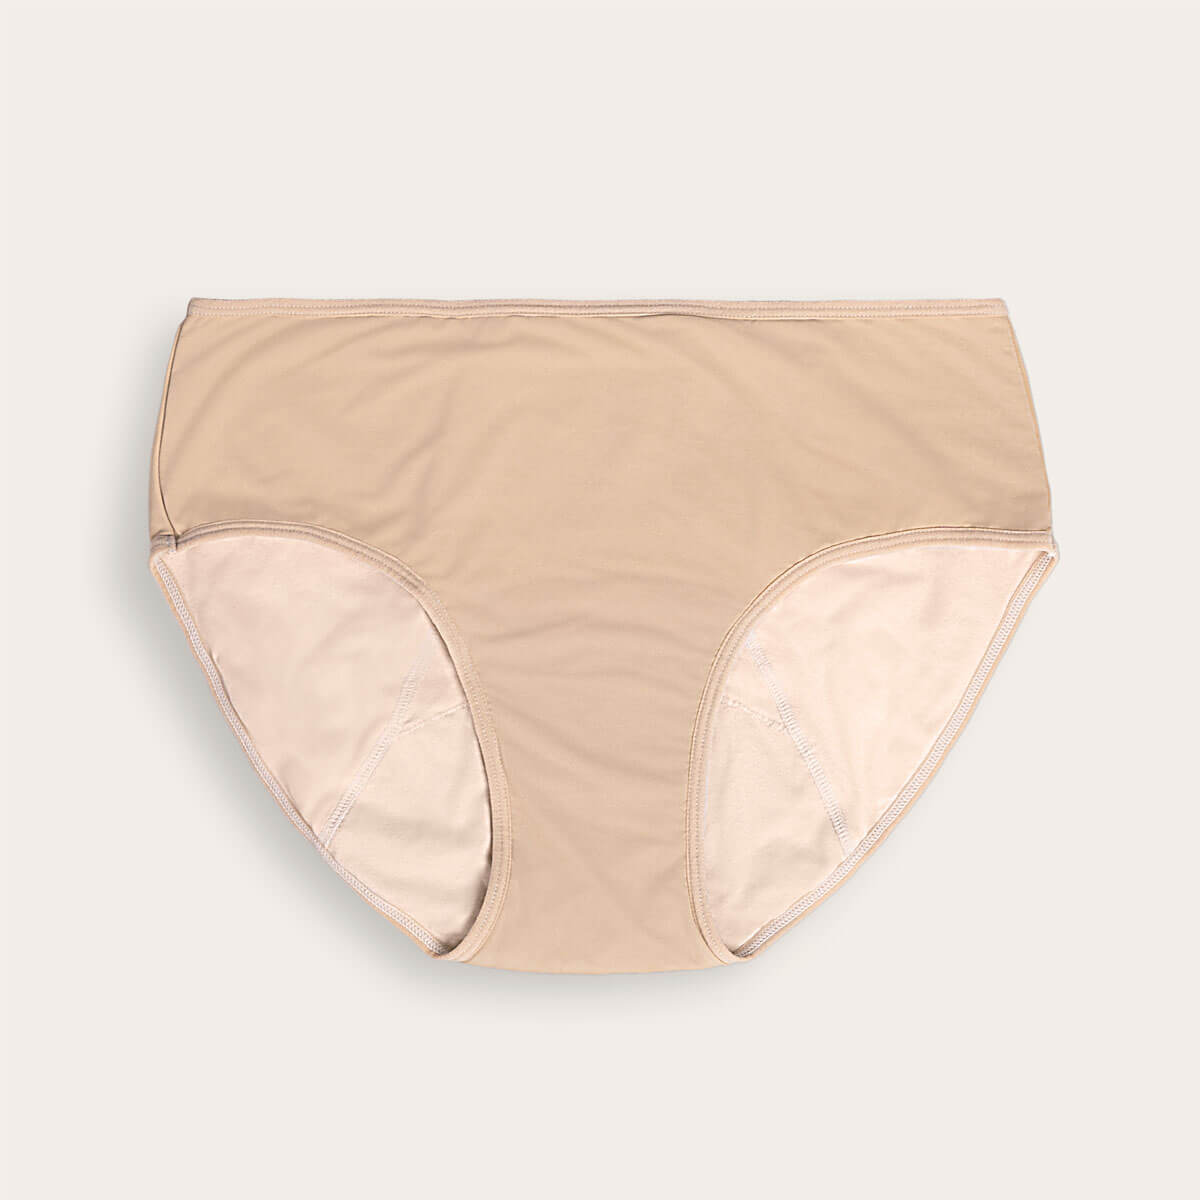 Bikini Cotton Nude/Beige - Confidence Period Panties